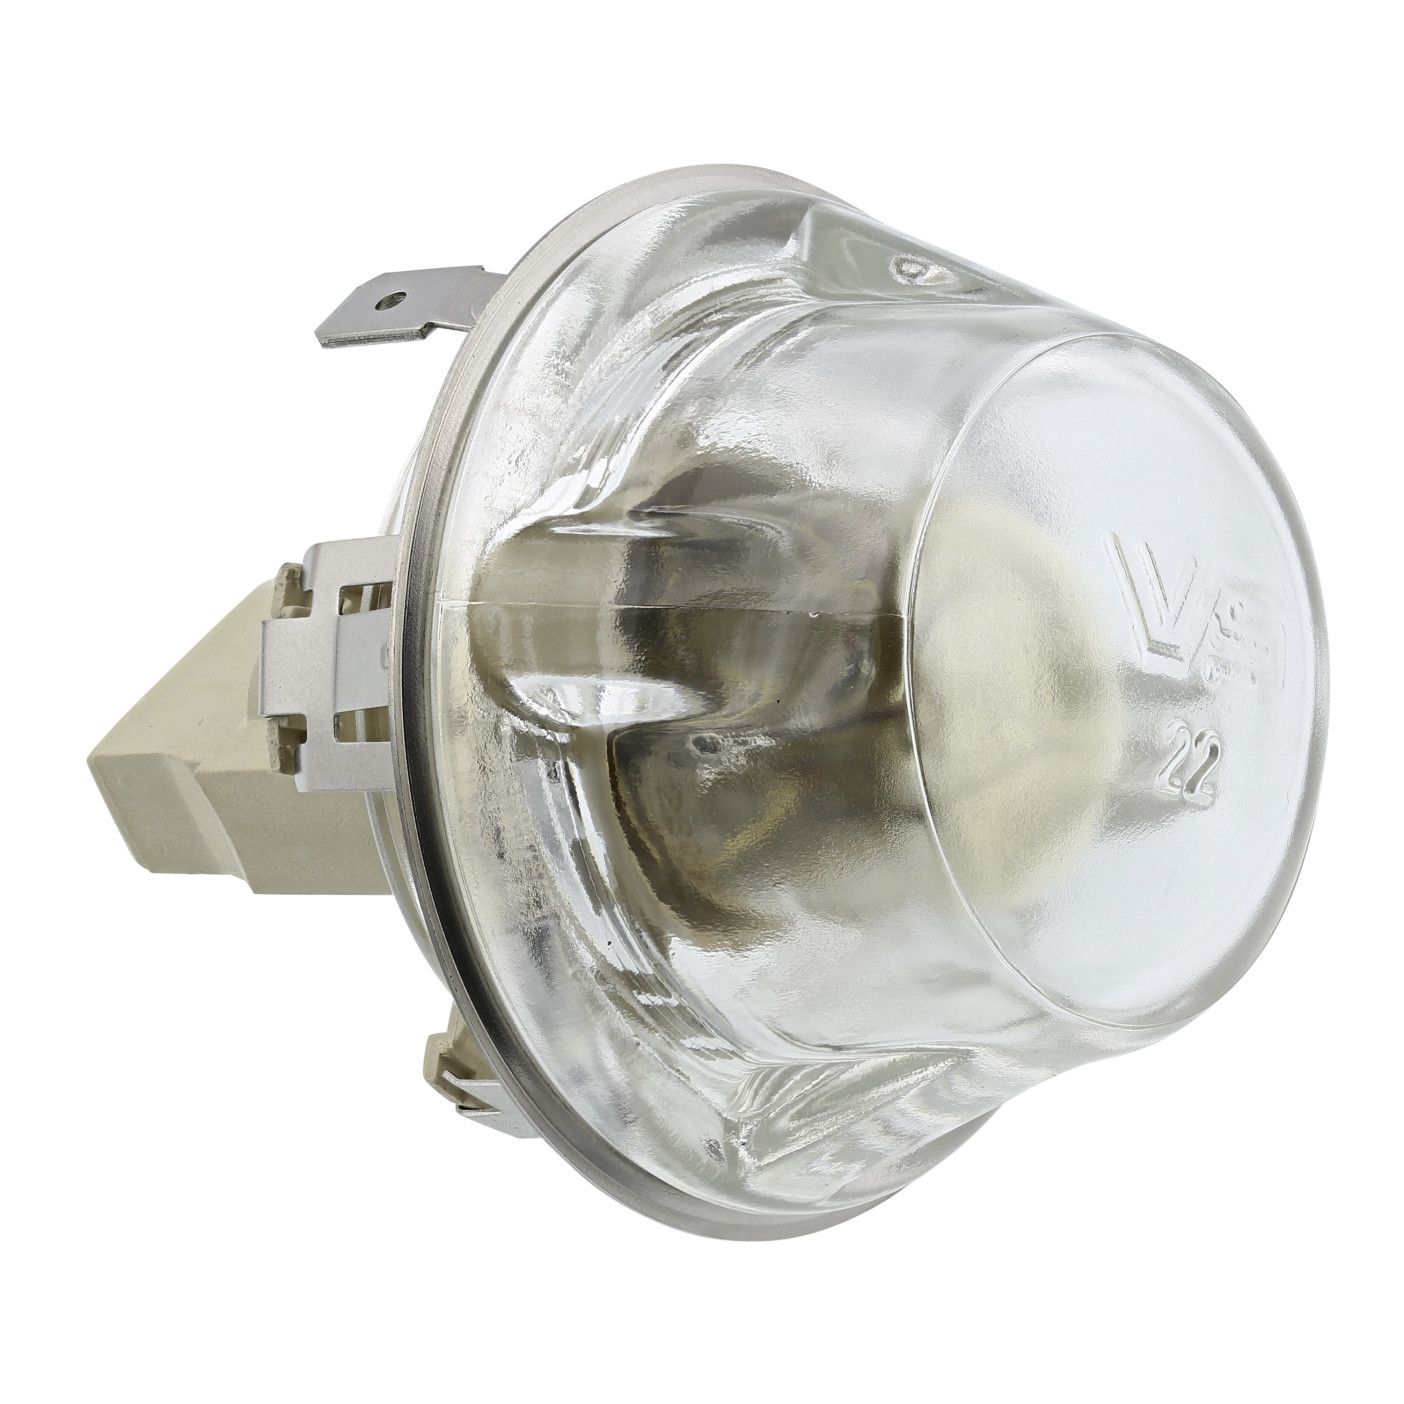 Lampa, světlo, svítidlo s halogenovou žárovkou pro trouby Electrolux AEG Zanussi - 3570384069 Electrolux - AEG / Zanussi náhradní díly